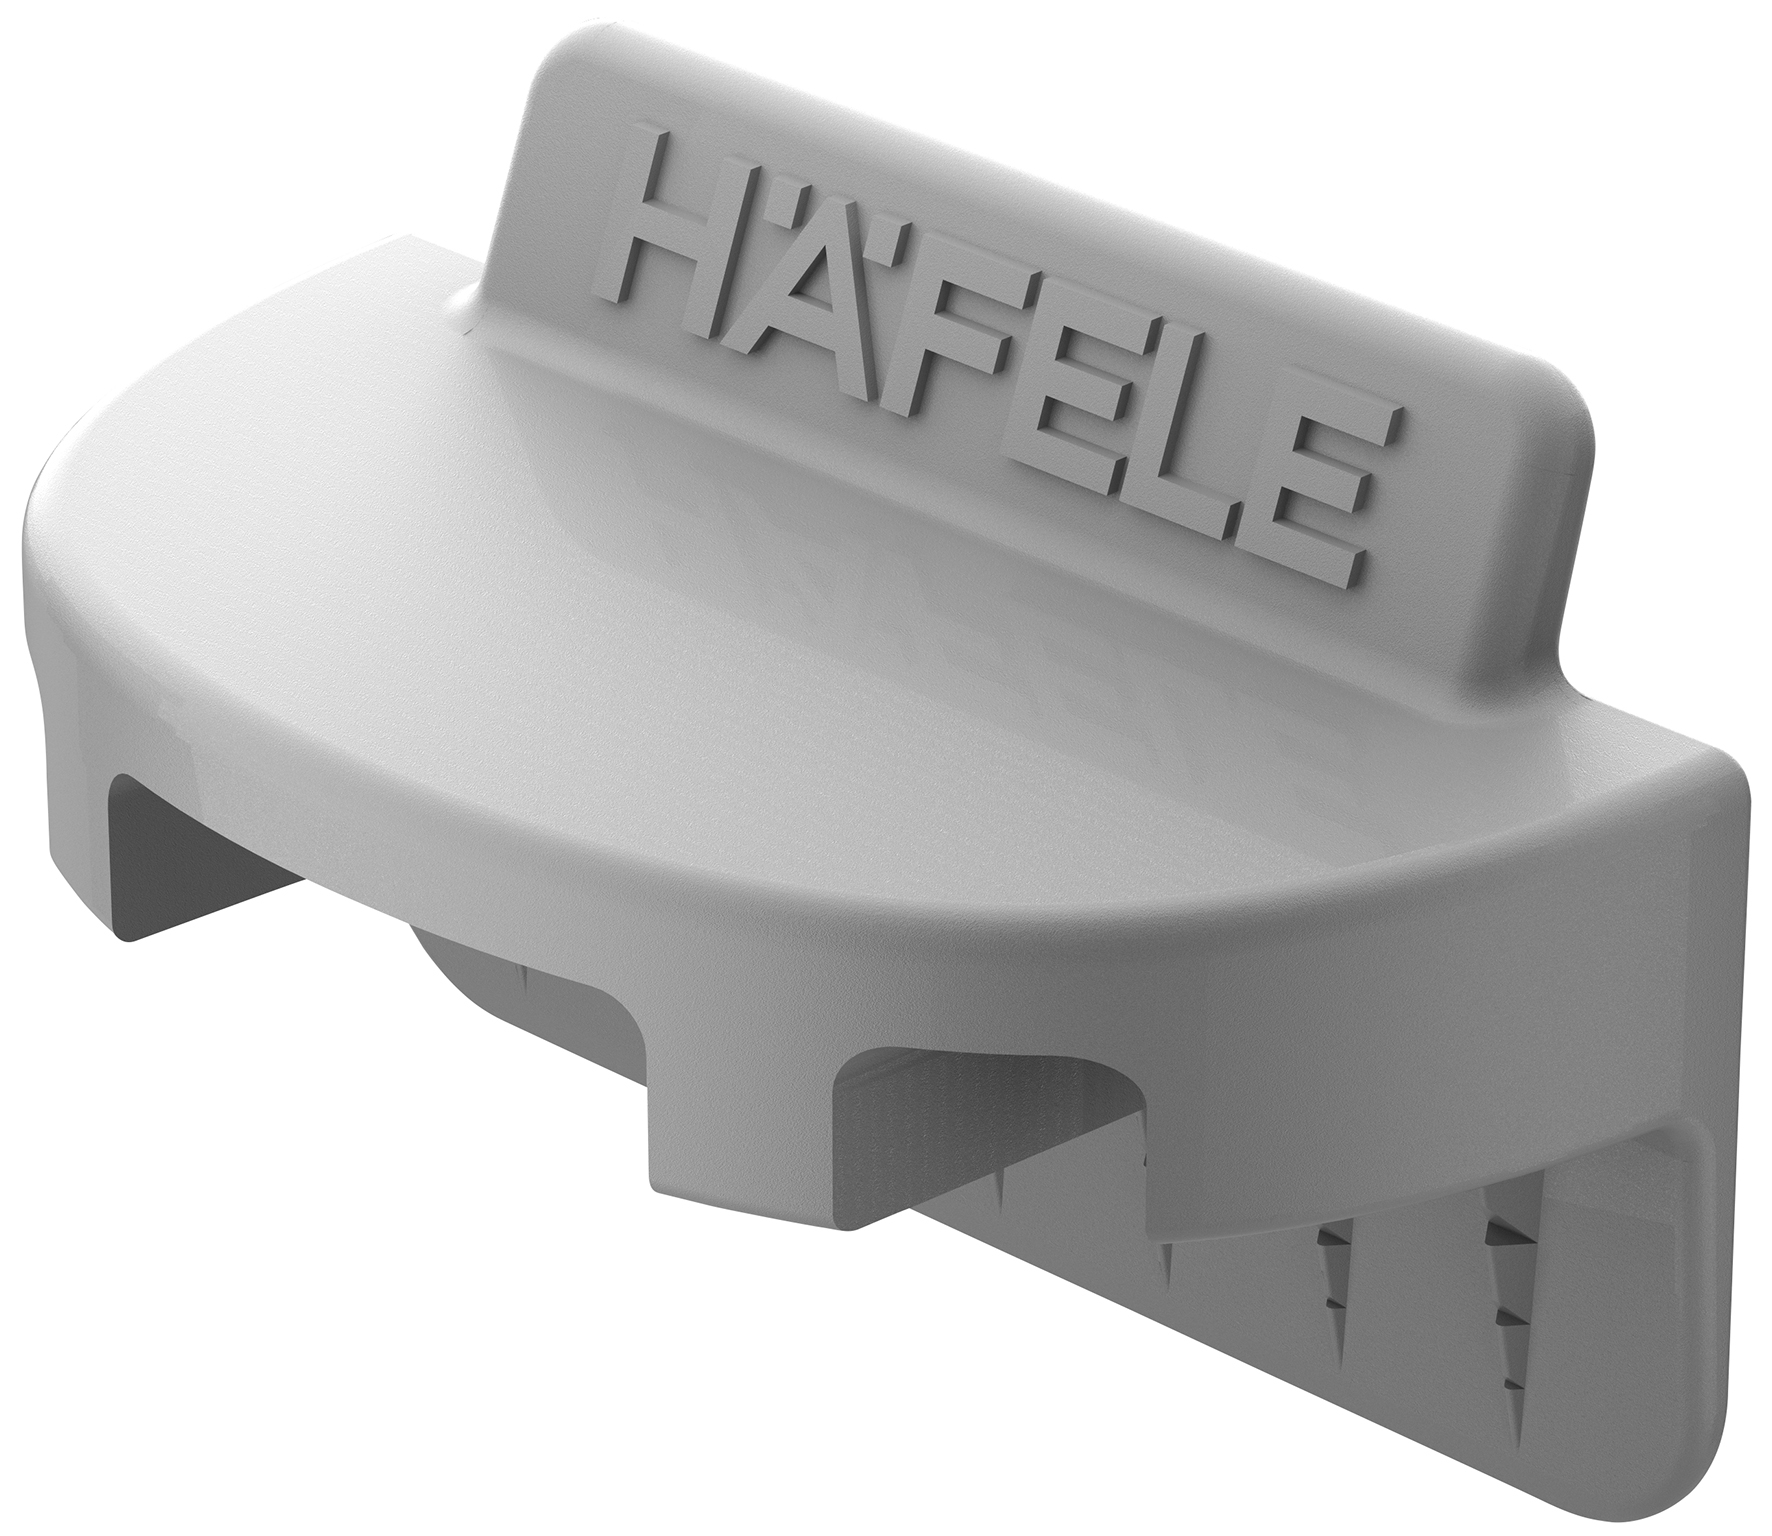 Rückwandverbinder zum Einstecken für kleinere Möbel, der passende Partner für den Häfele Spreizverbinder SC 8/25.